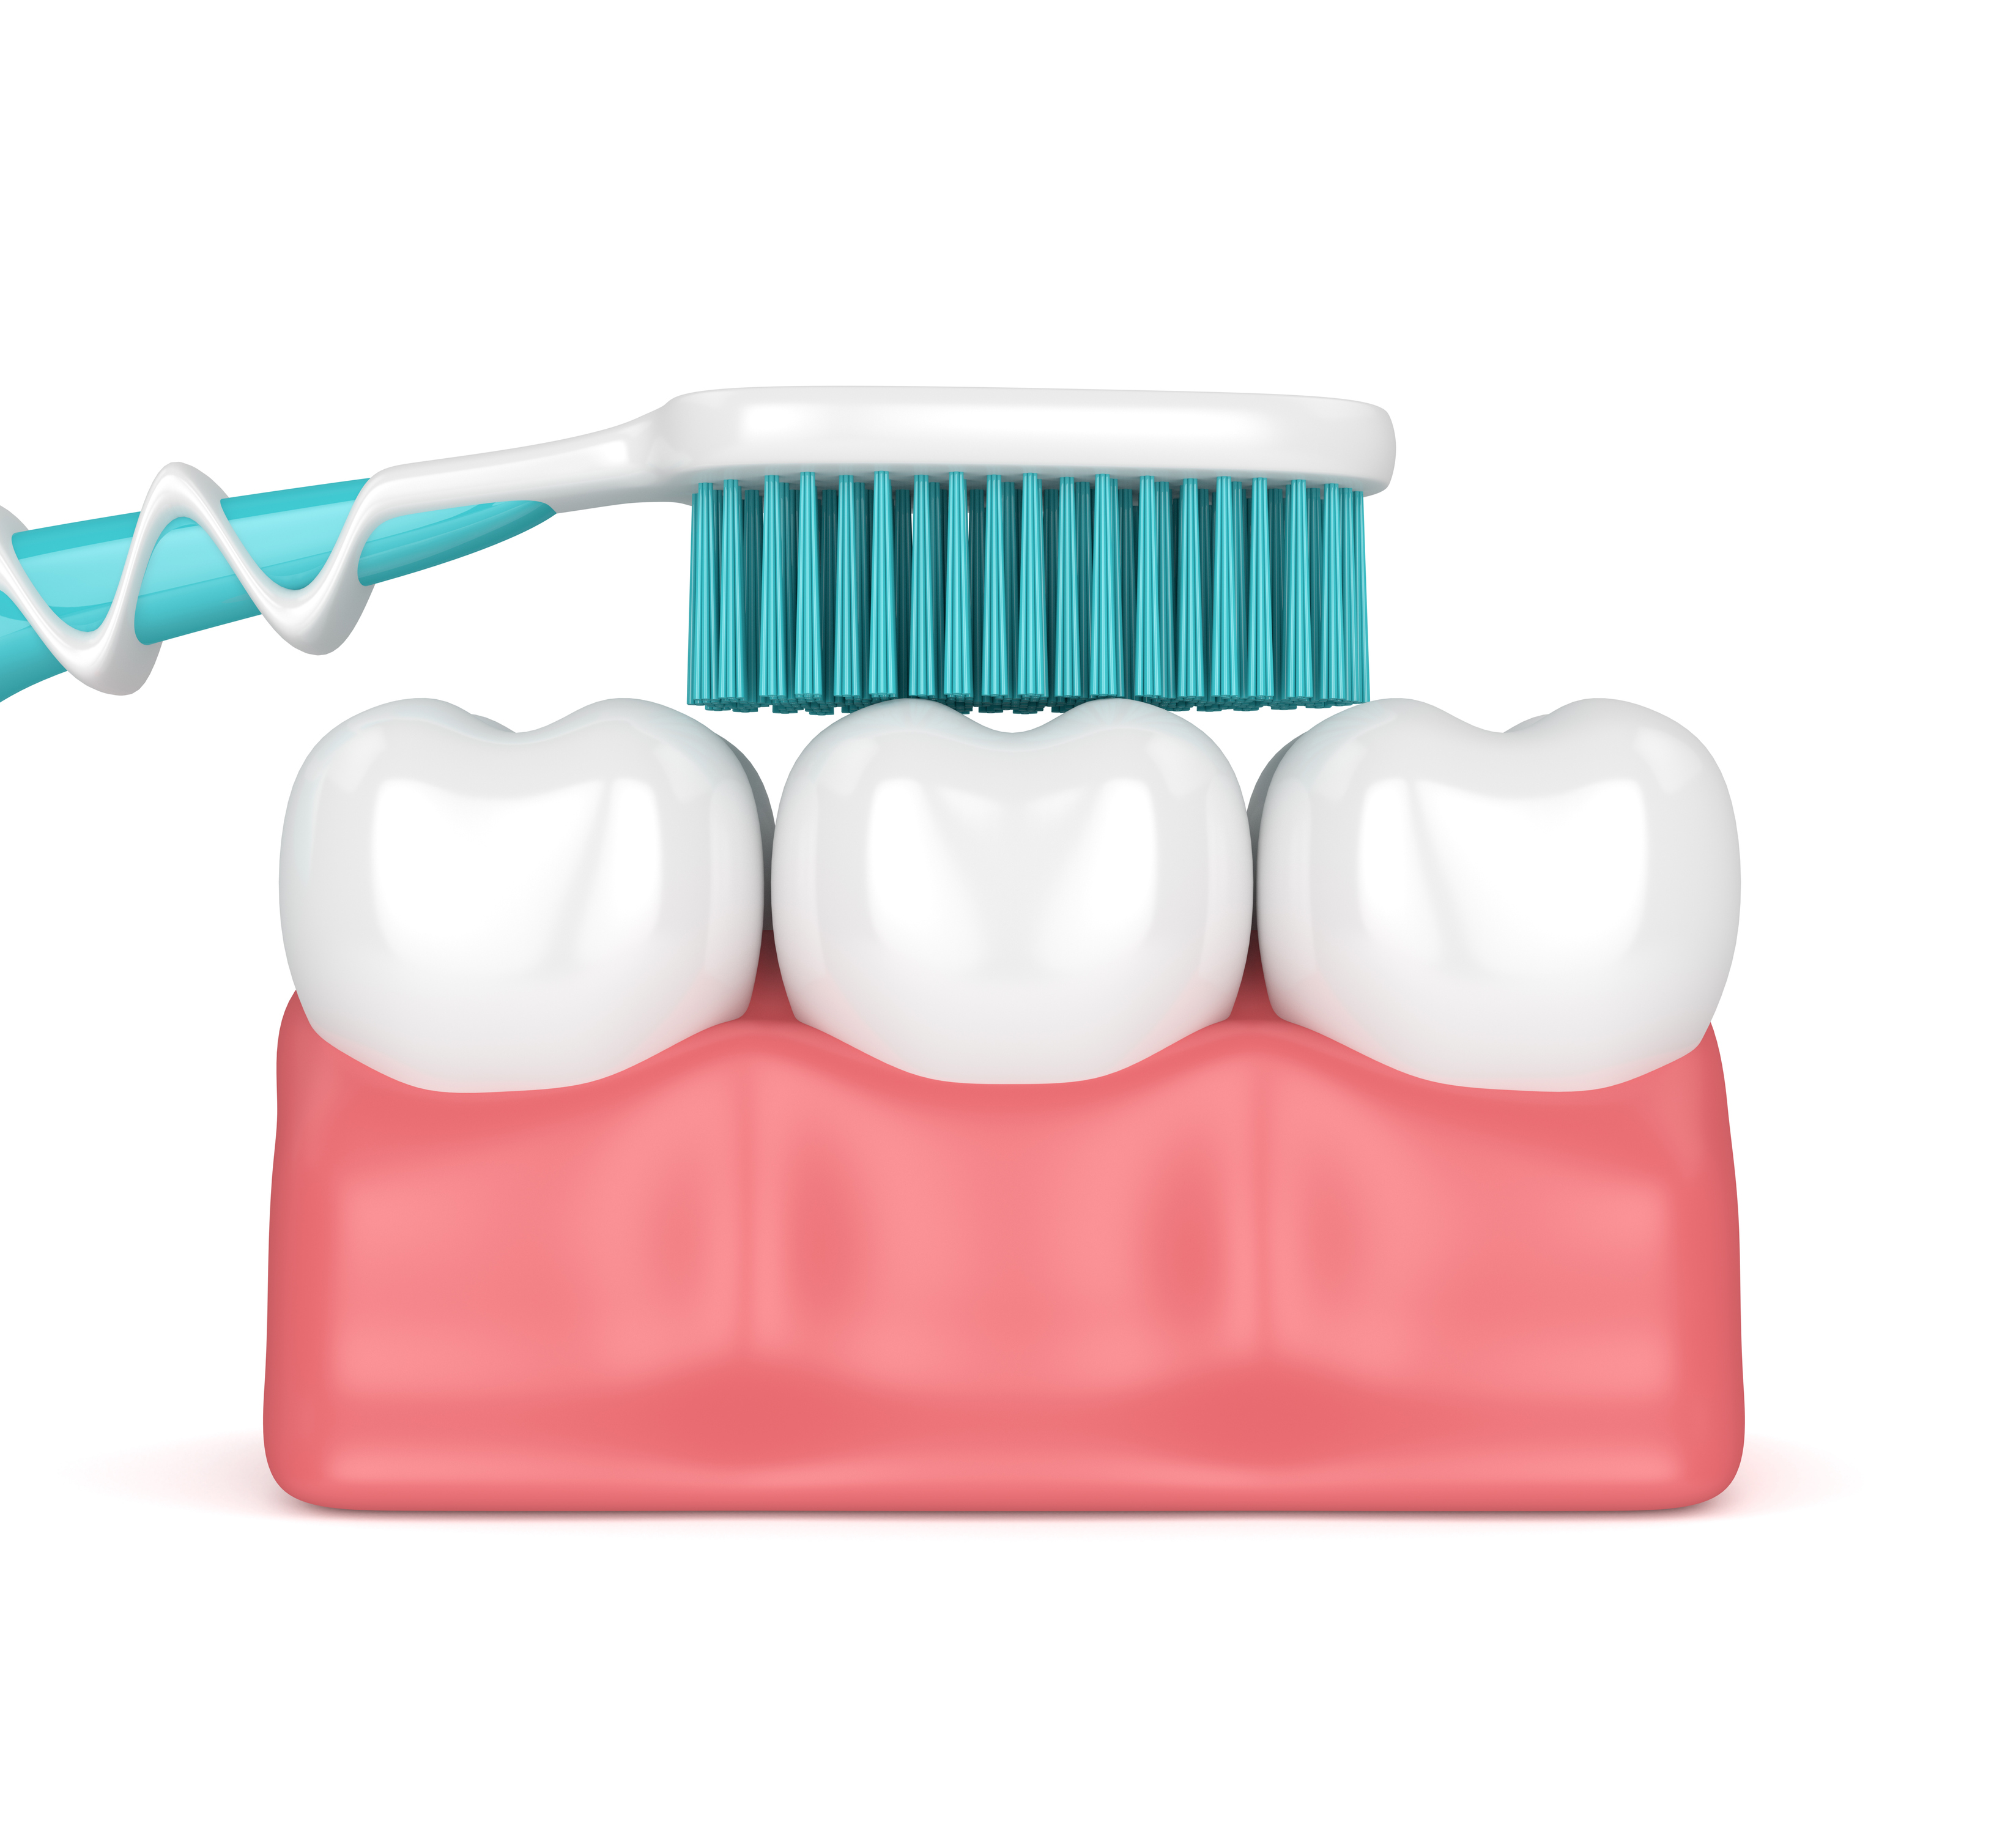 cepíllate bien los dientes y no olvides que también es importante que lo hagas en la lengua, aquí te dejamos los 5 básicos que no pueden faltar en tu higiene bucal.